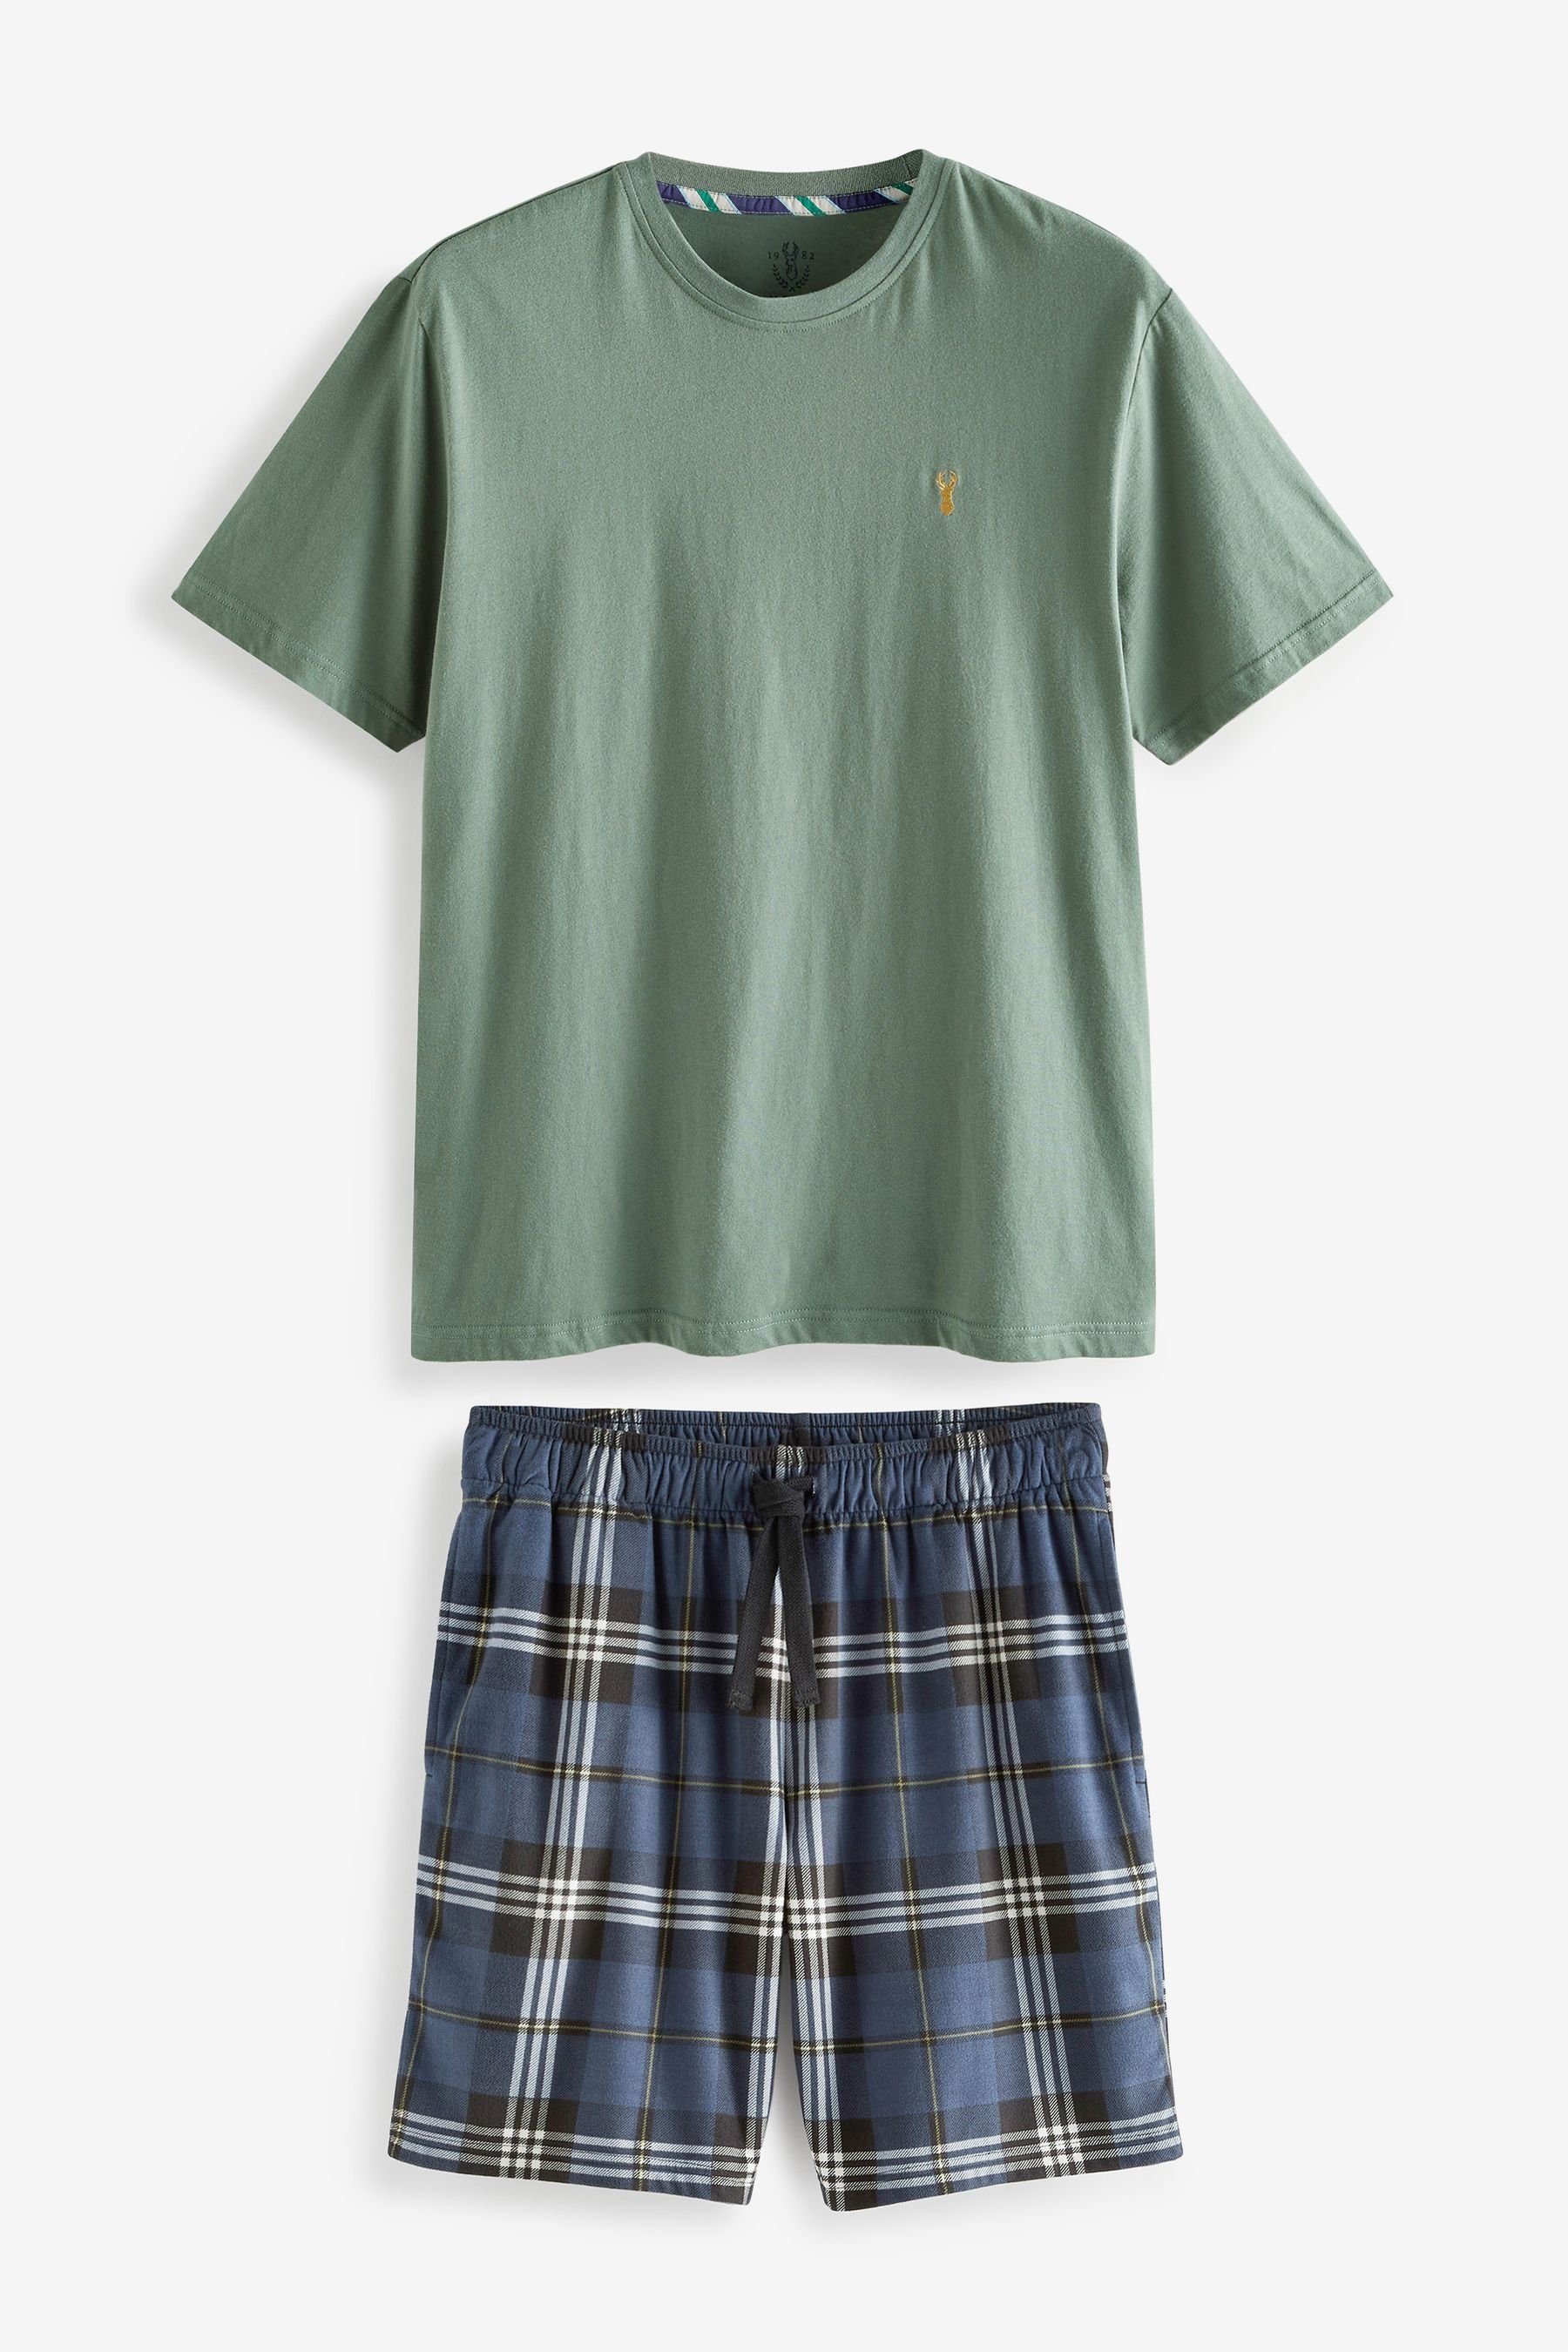 Next Pyjama Motion Flex Kuscheliger Pyjama mit Shorts (2 tlg) Green/Navy Blue Check